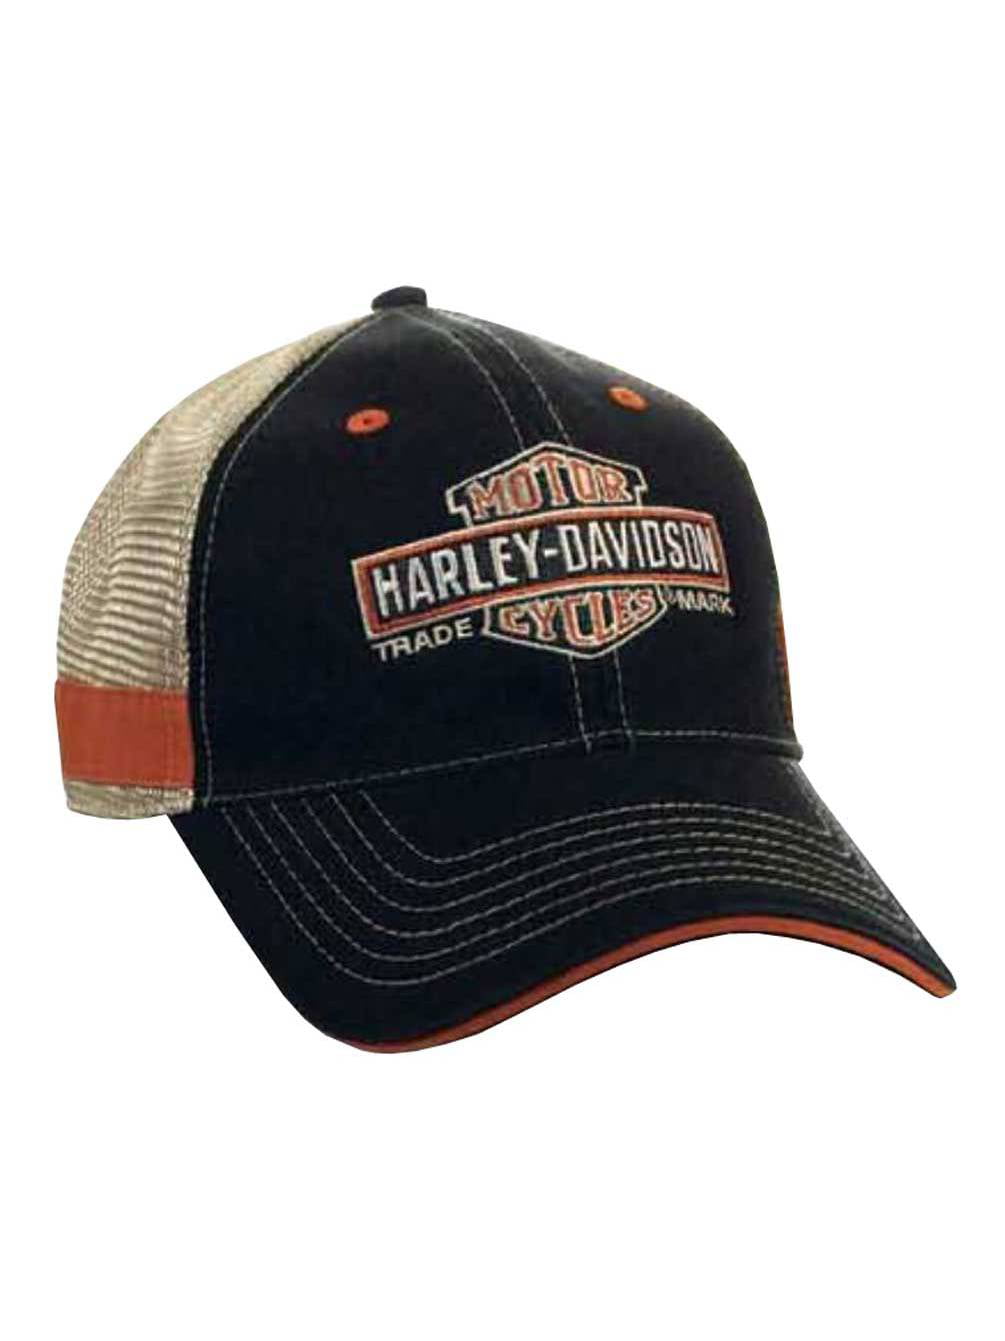 Harley Davidson Trucker Hat Online